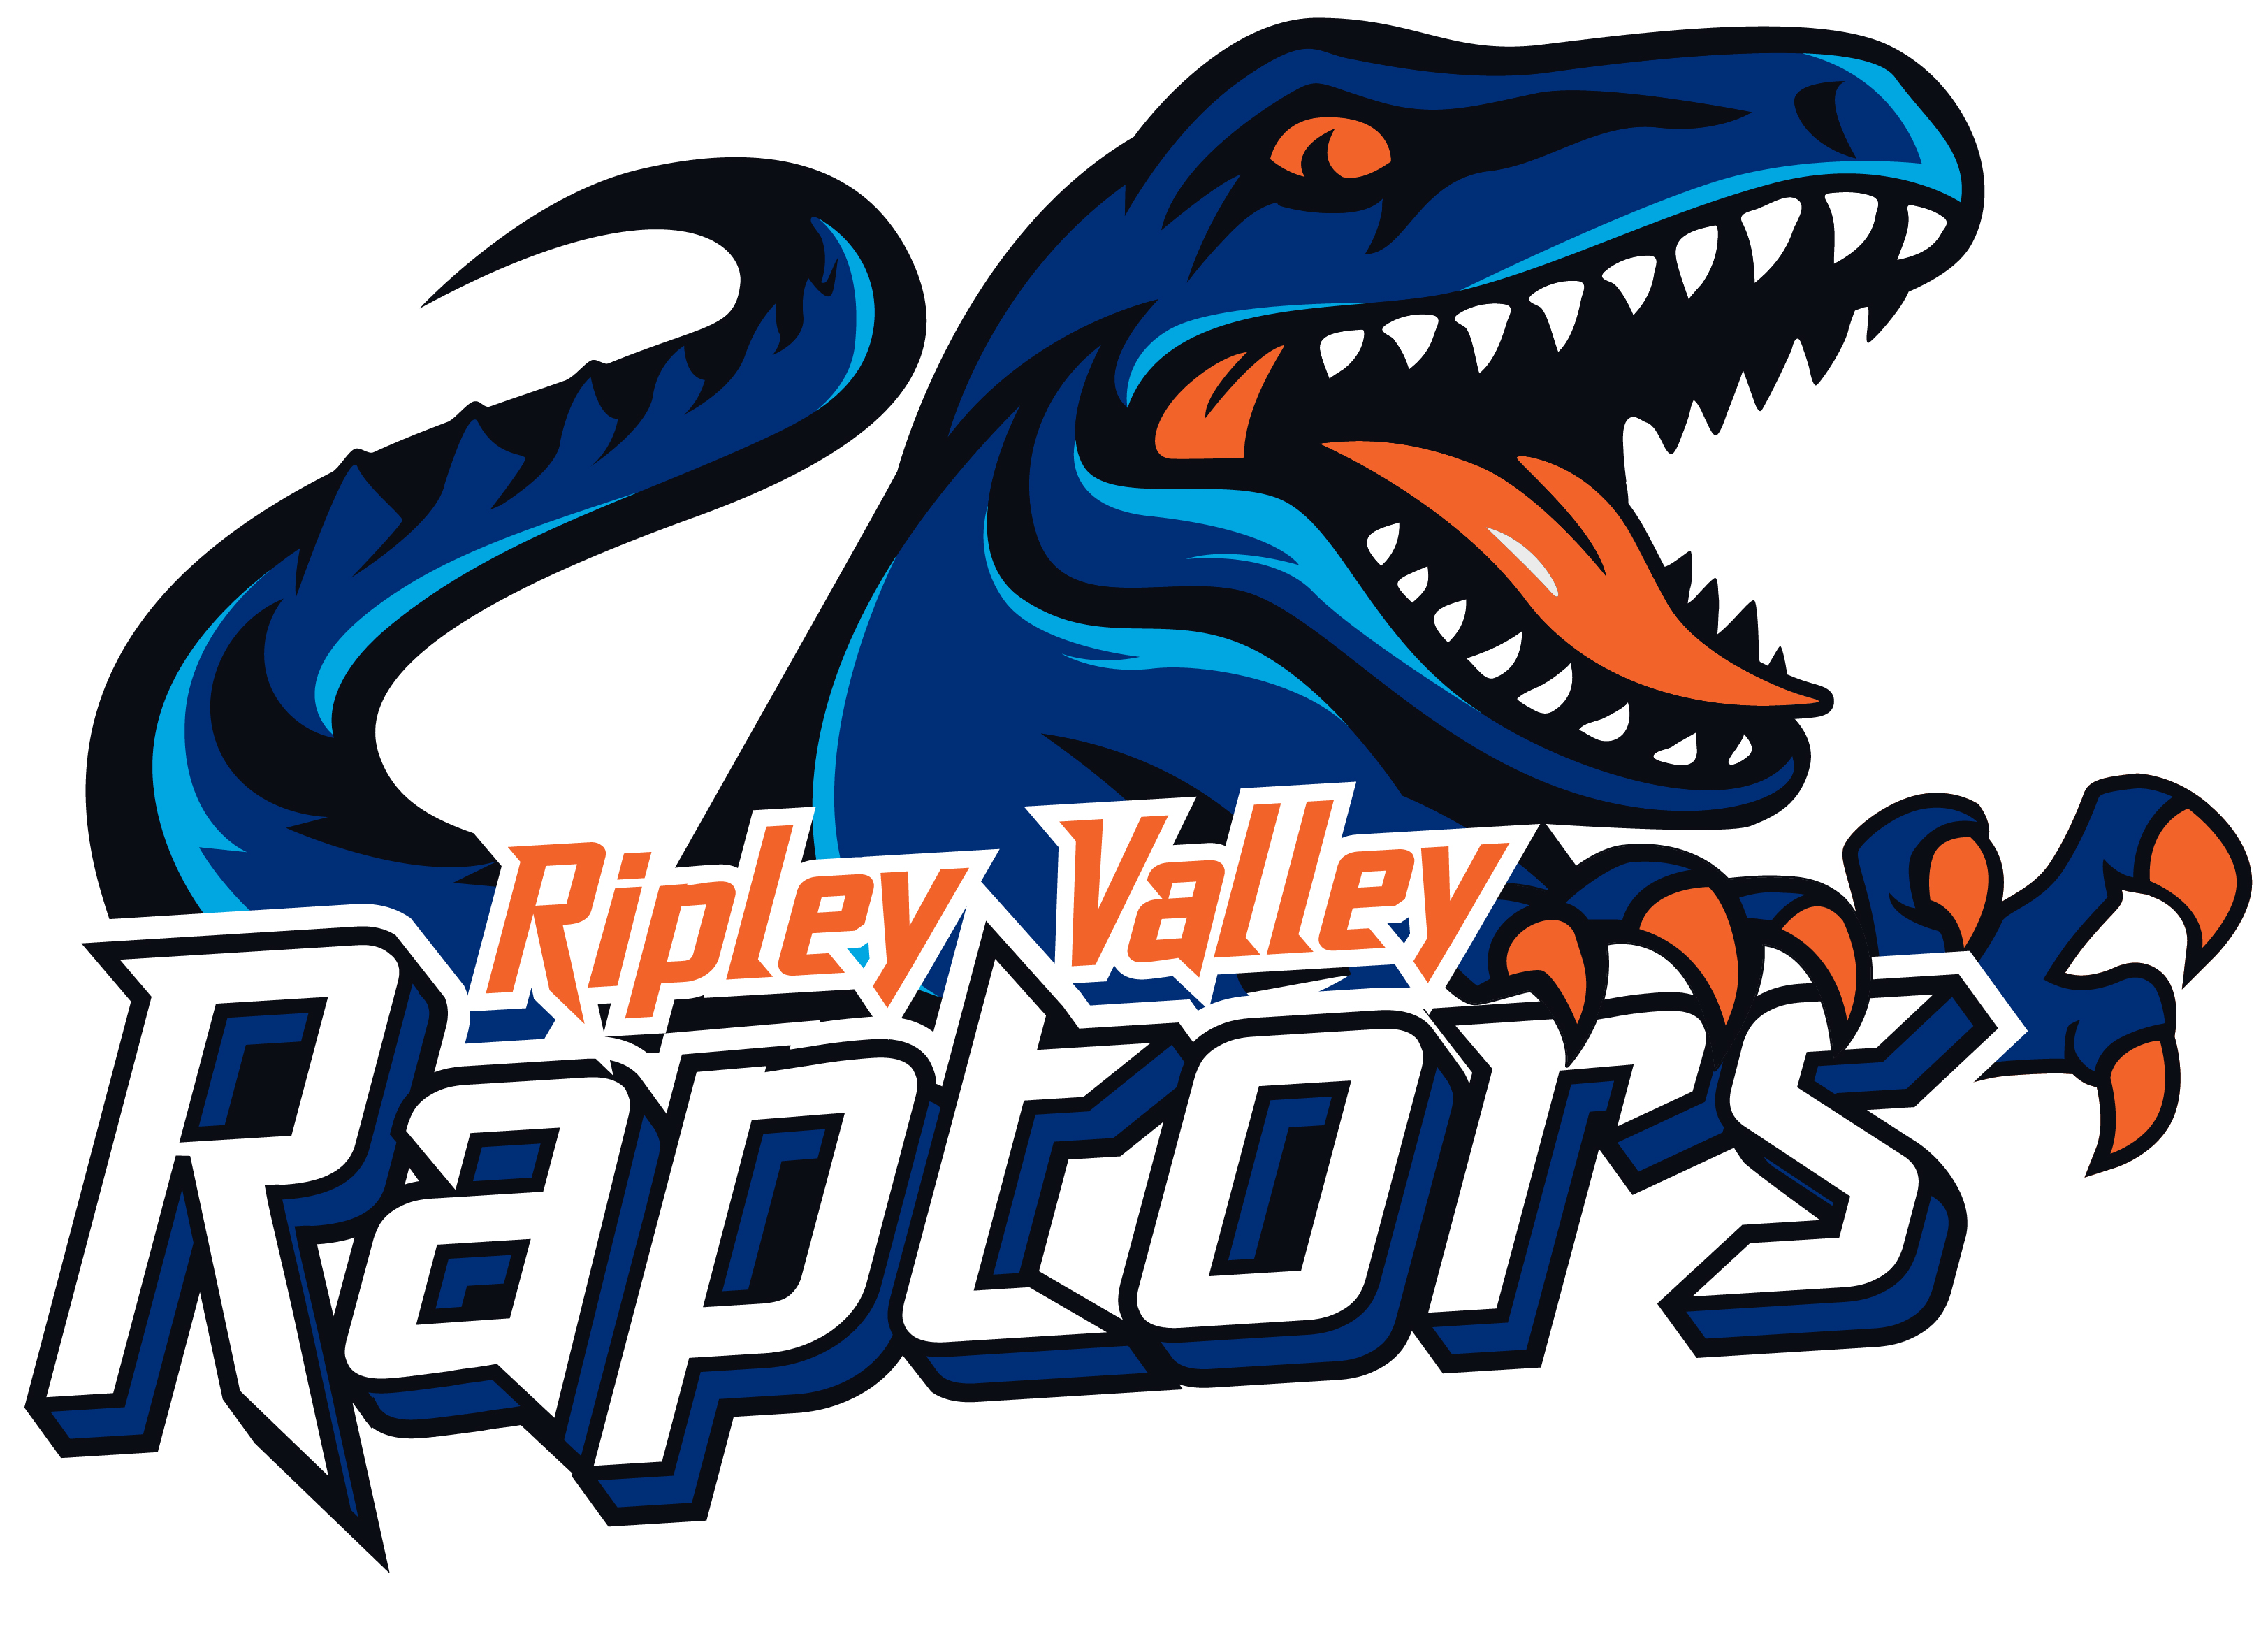 Ripley Valley raptors.jpg